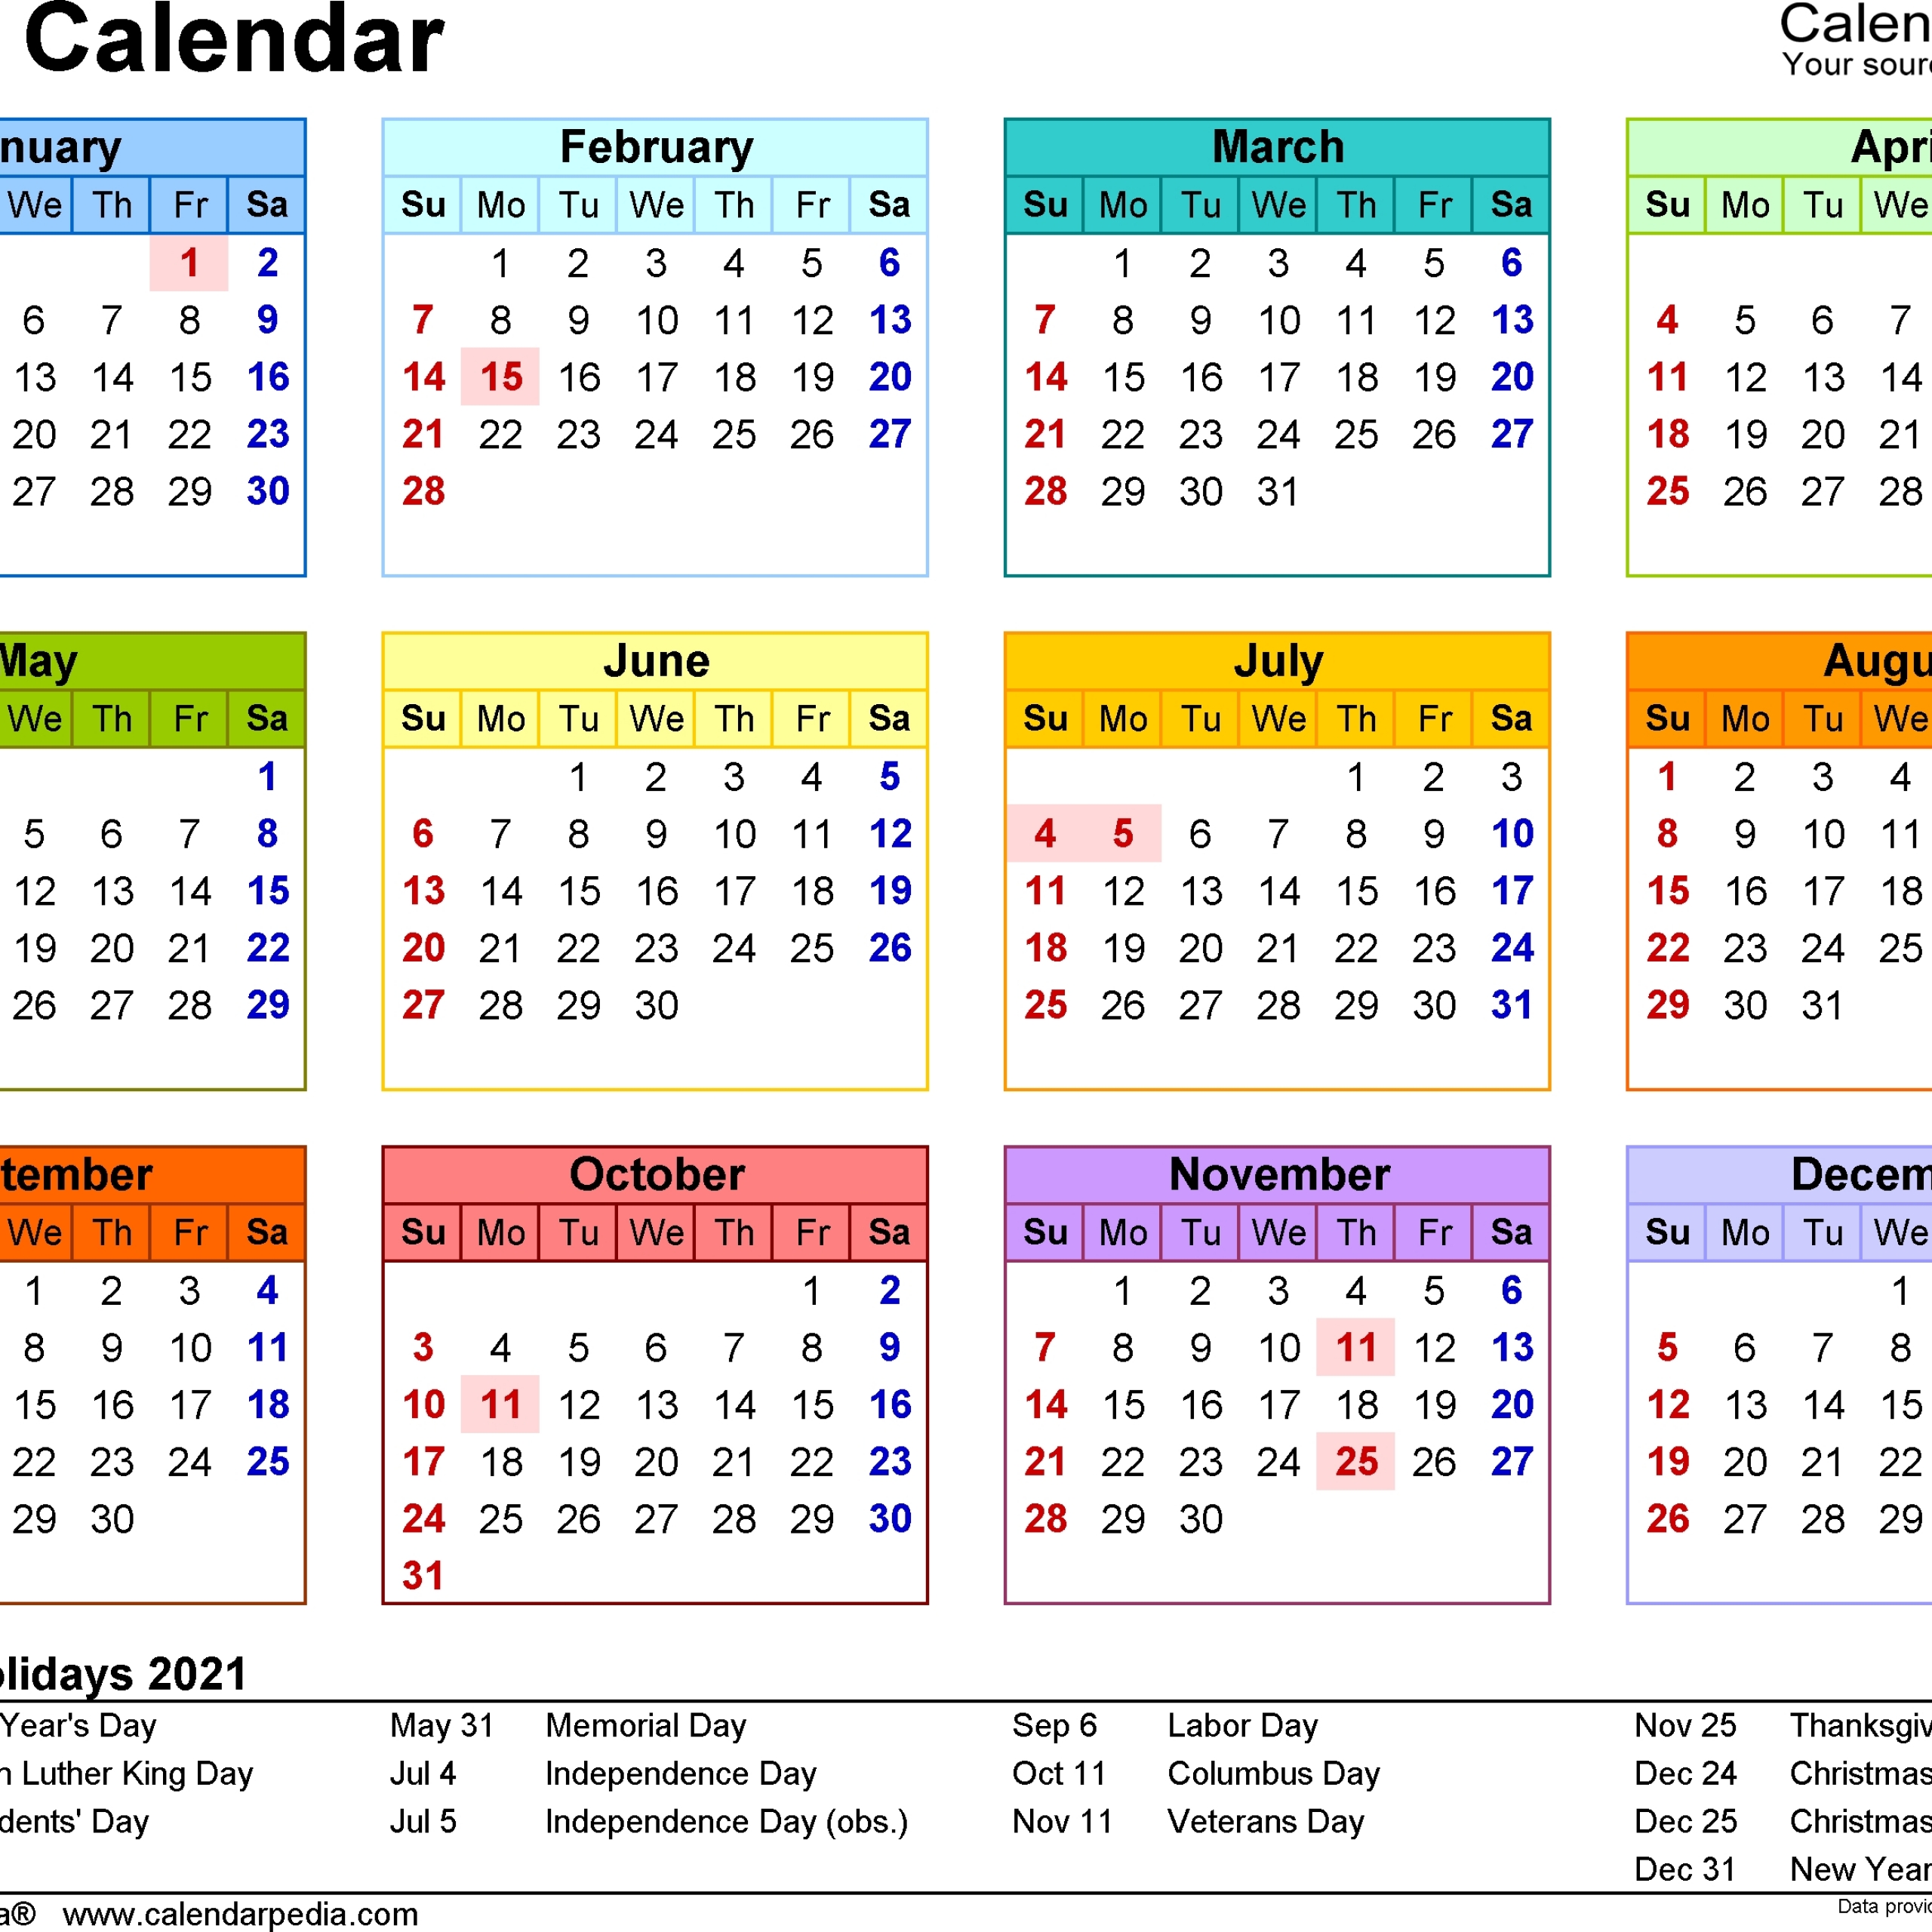 2021 Calendar South Africa | Calendar Printables, Free-2021 Calendar With Holidays Sa